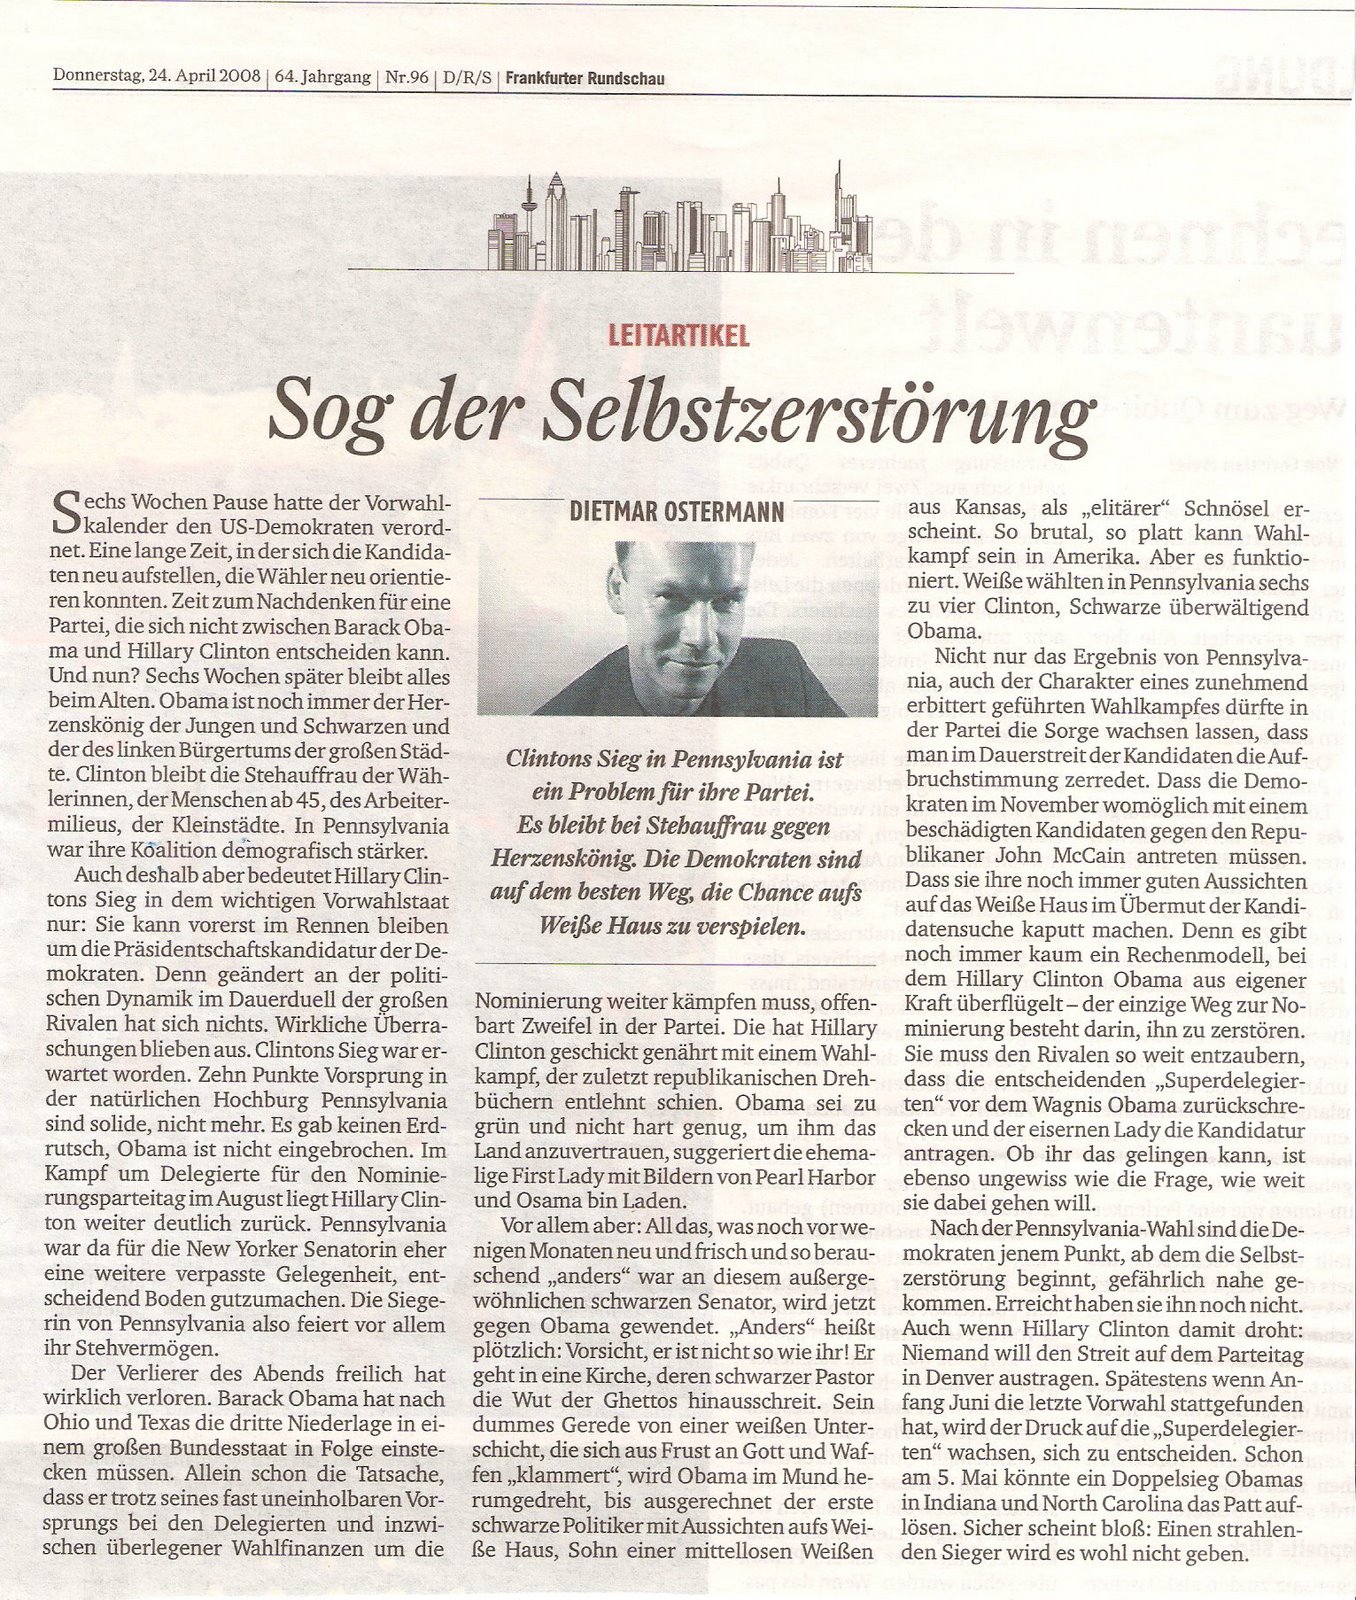 [Frankfurter+Rundschau+-+US+Vorwahlen-+Editorial+24.04.2008.jpg]